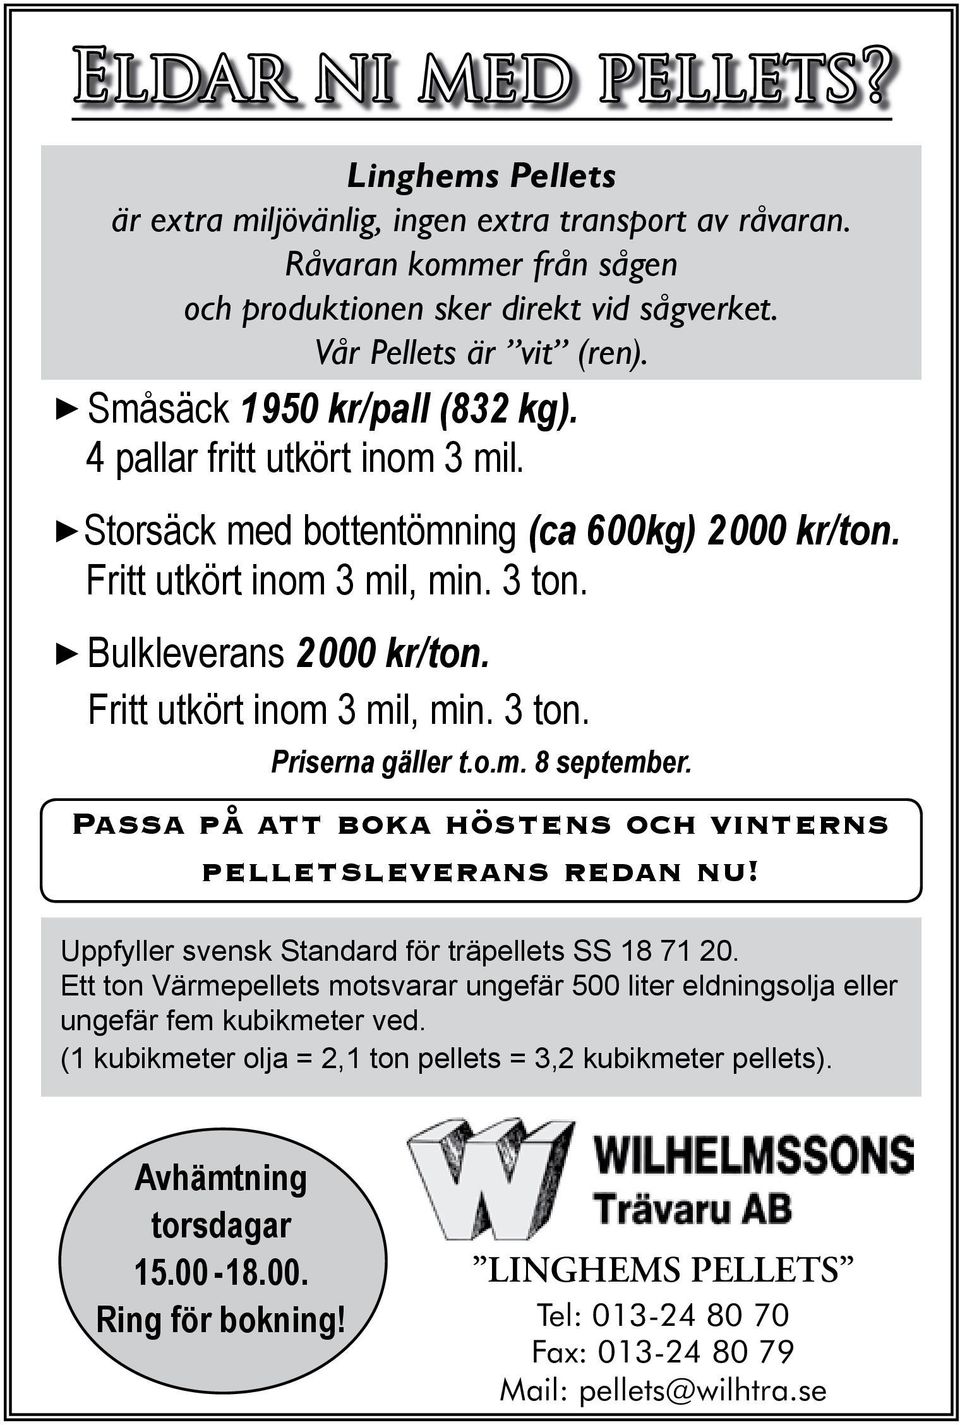 Fritt utkört inom 3 mil, min. 3 ton. Priserna gäller t.o.m. 8 september. Passa på att boka höstens och vinterns pelletsleverans redan nu! Uppfyller svensk Standard för träpellets SS 18 71 20.